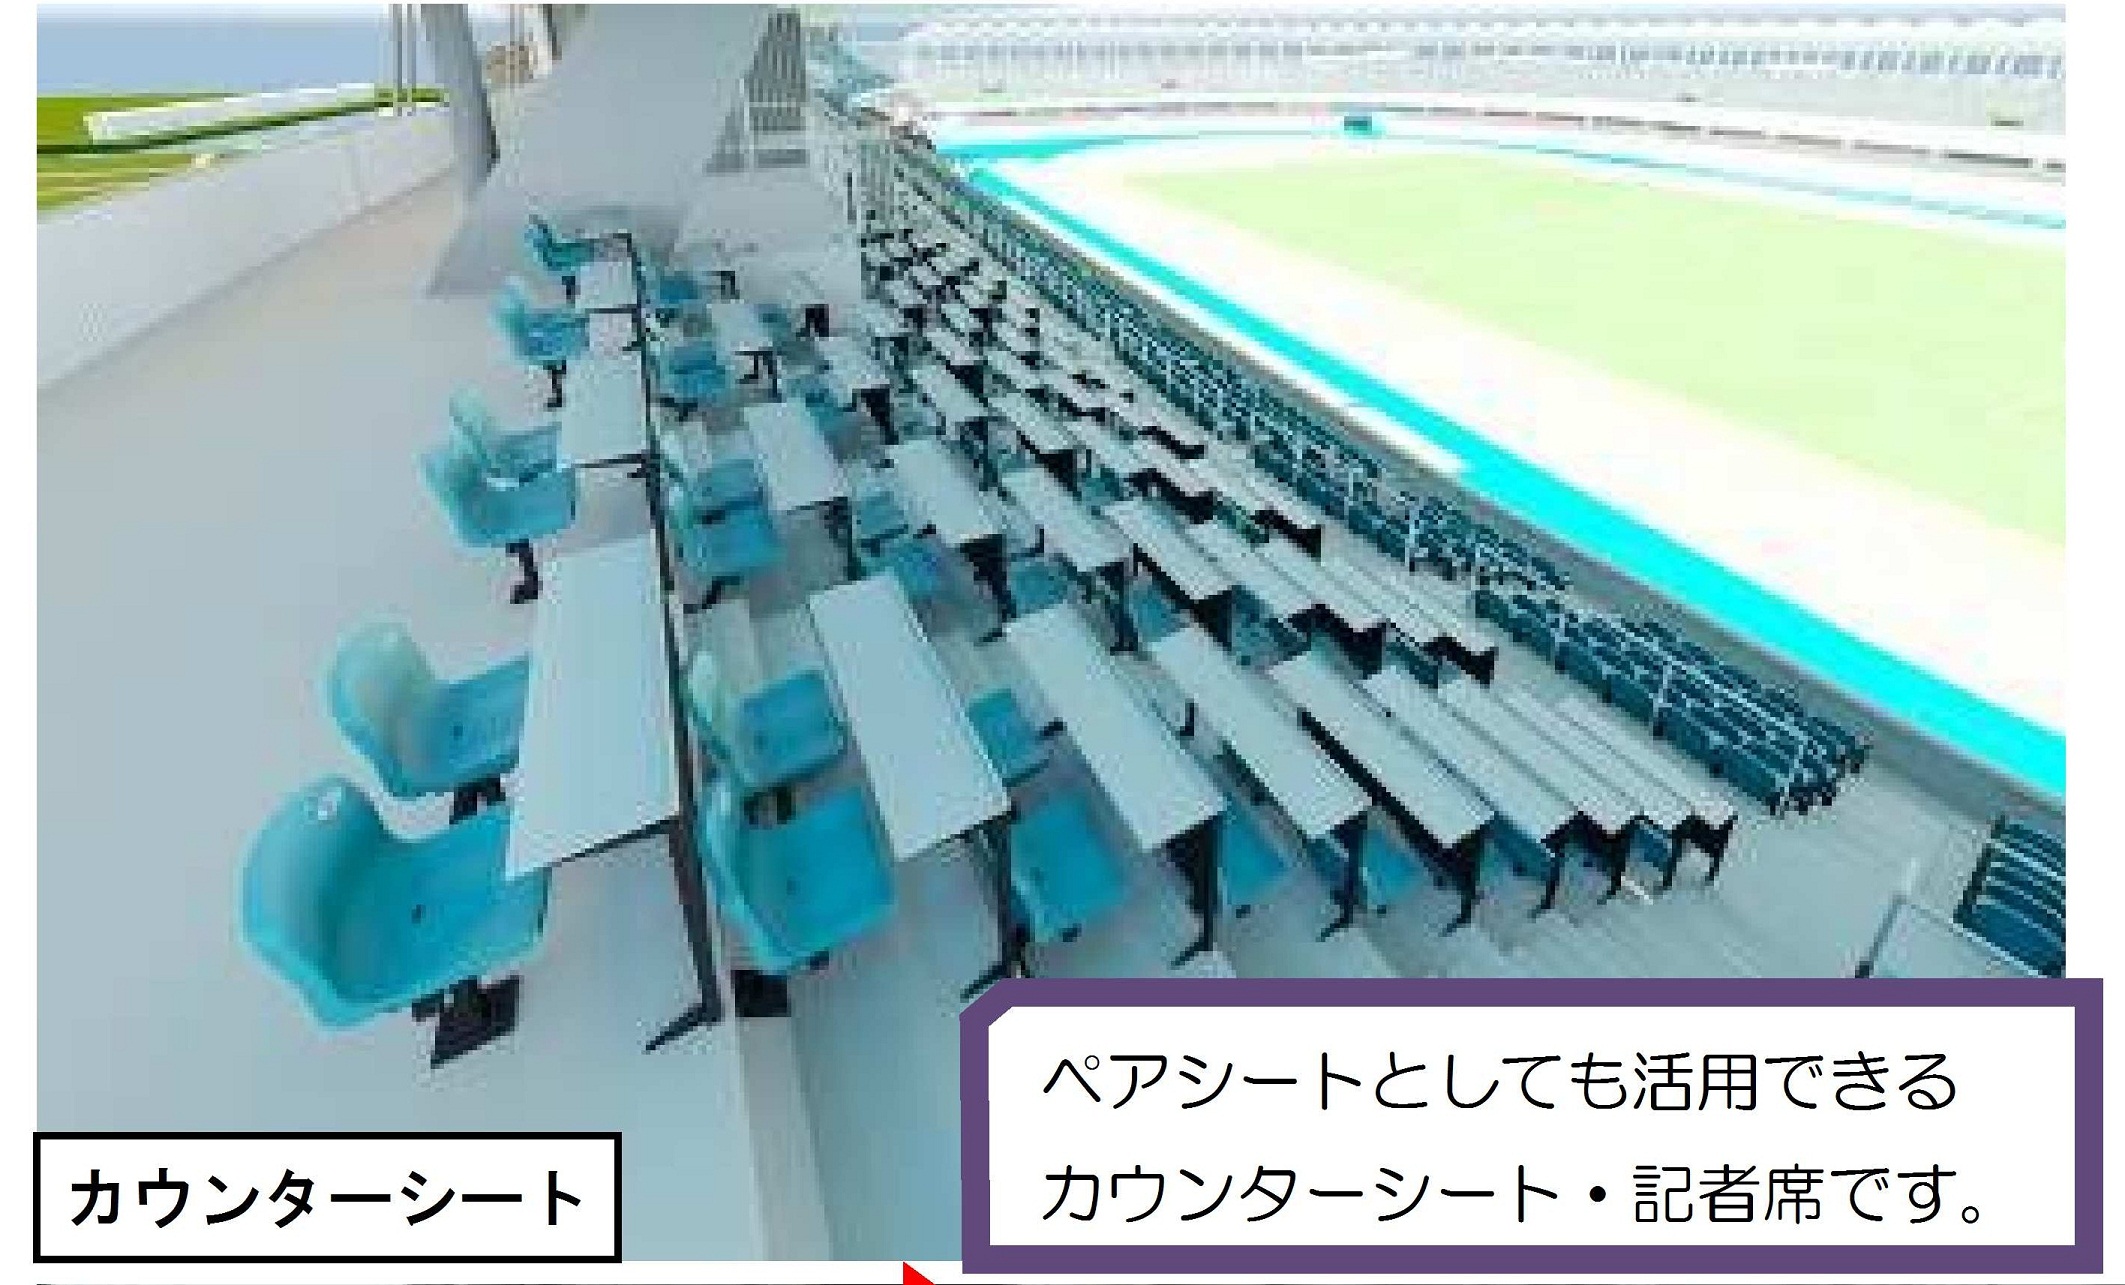 川崎市 等々力陸上競技場の整備について バラエティシートの採用